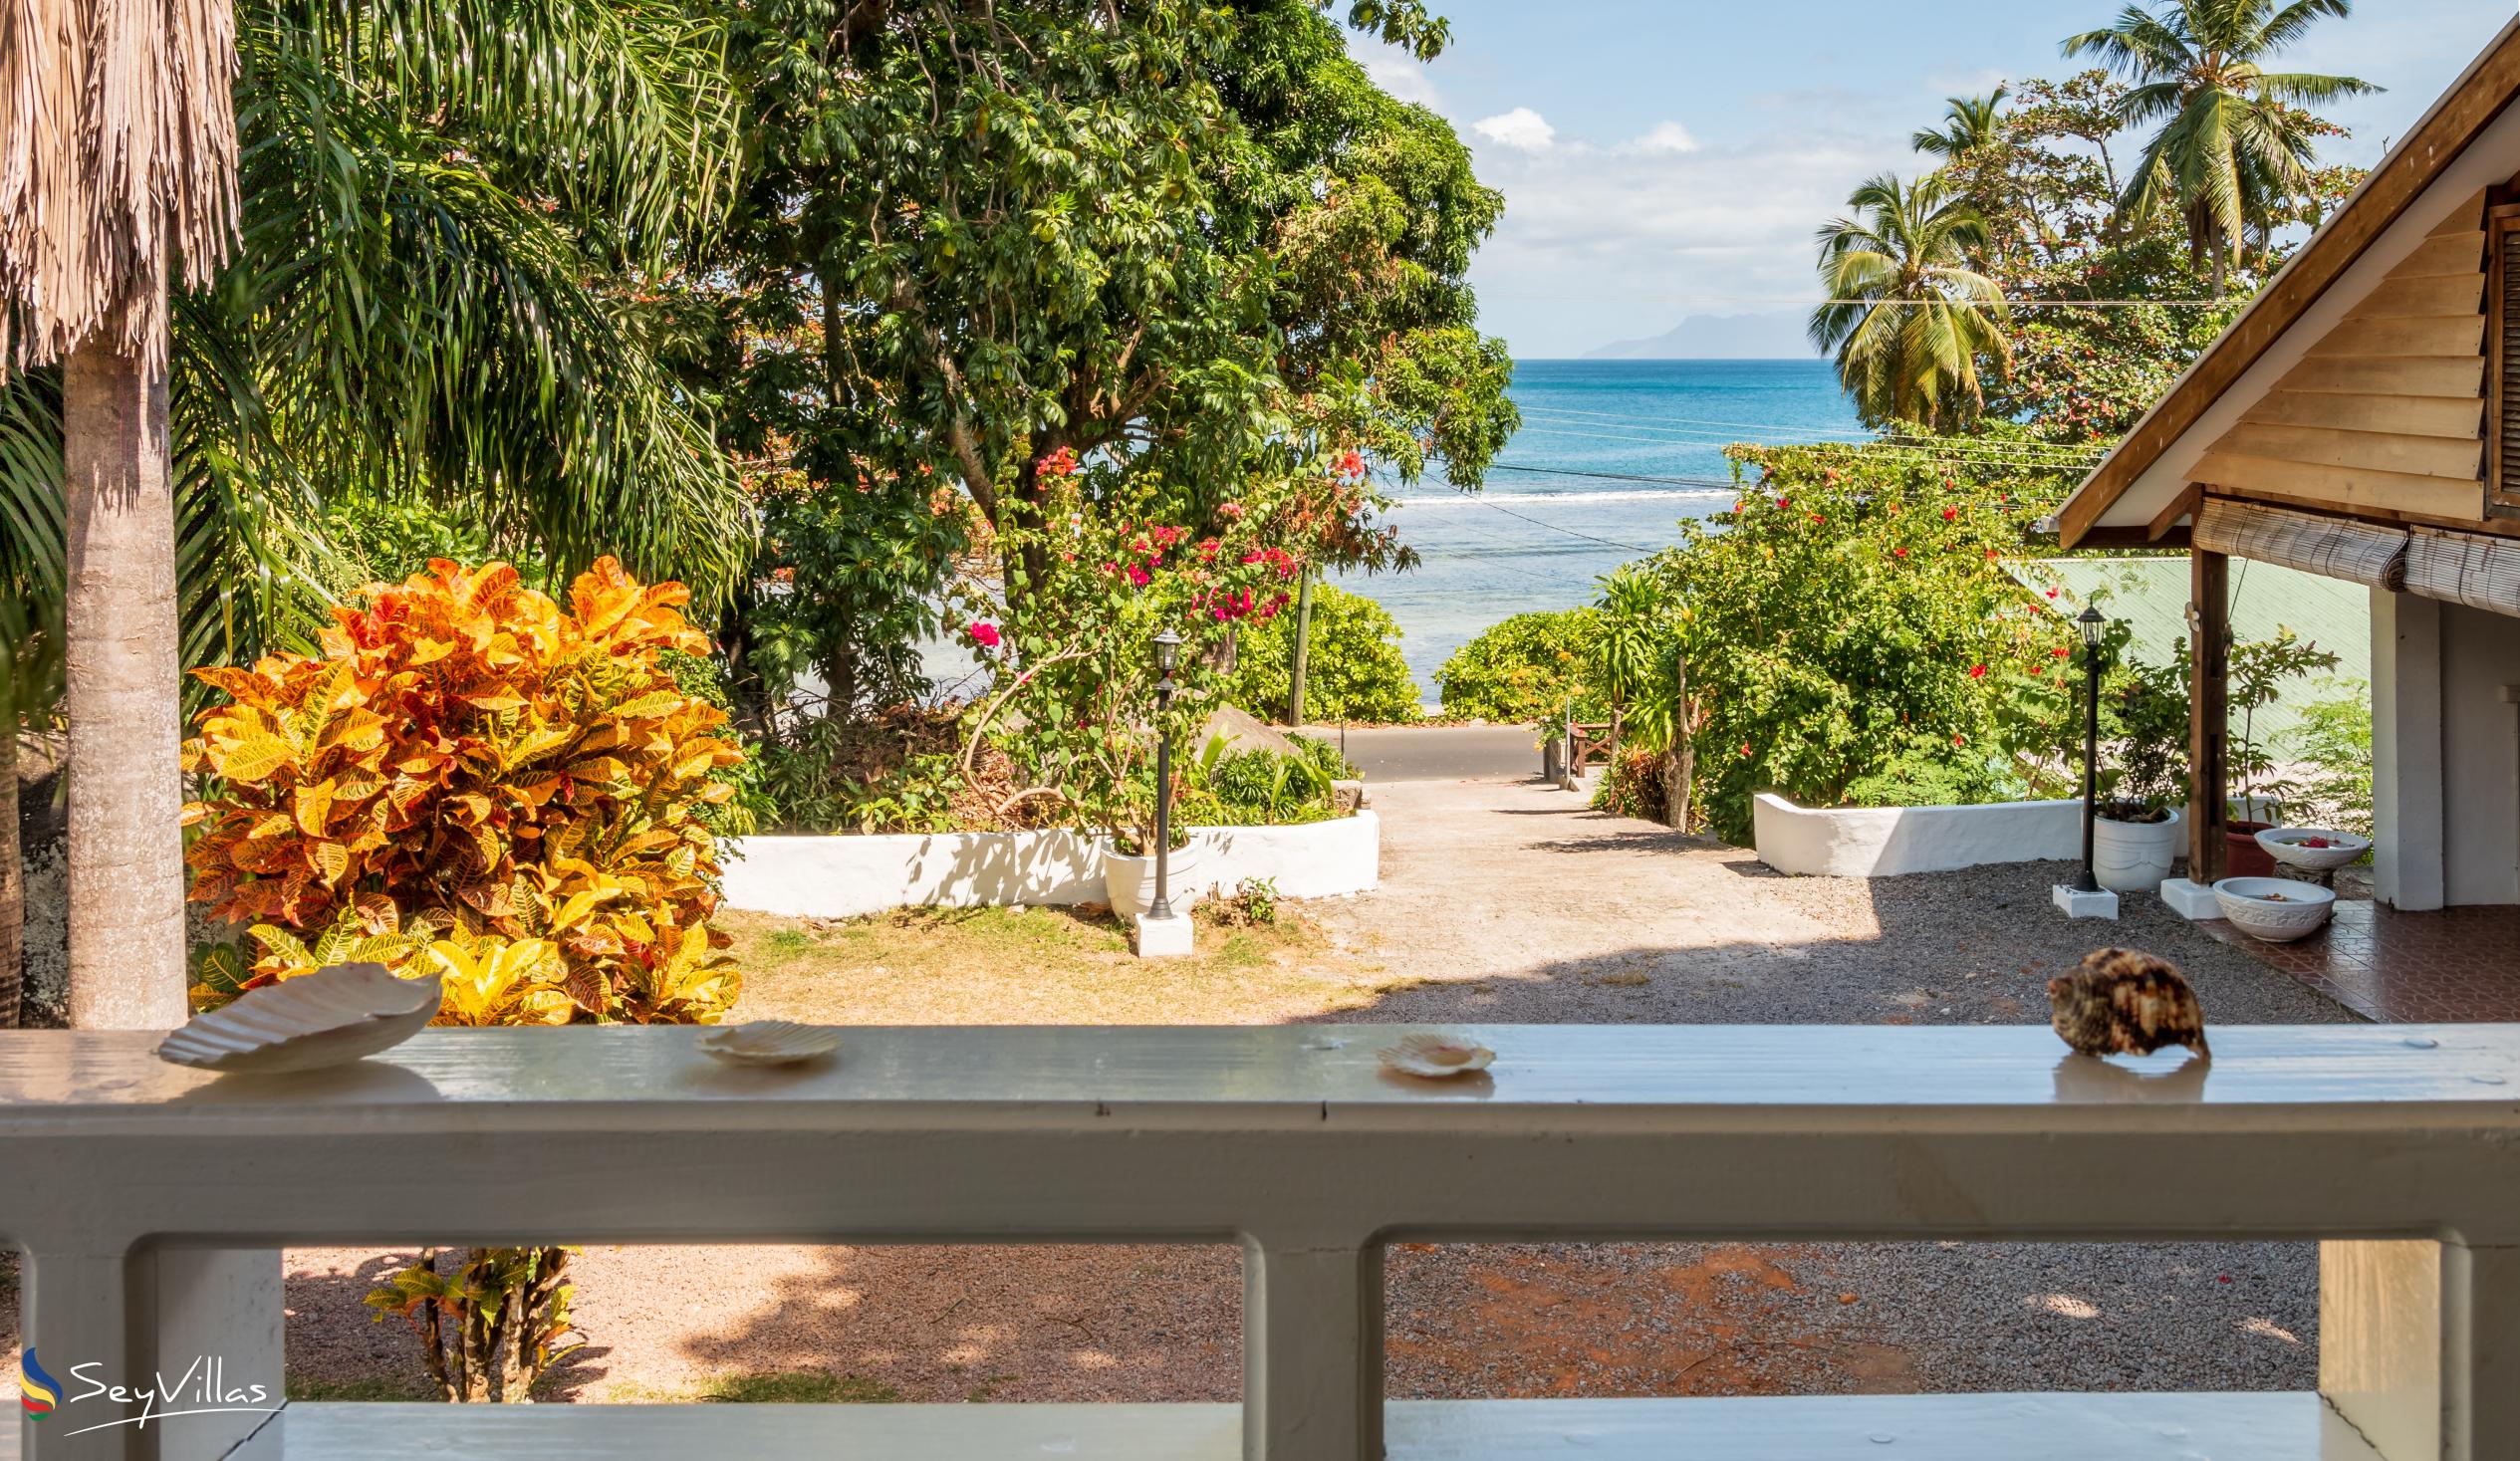 Foto 74: The Beach House (Chateau Martha) - Maison de vacances avec 1 chambre à coucher - Mahé (Seychelles)